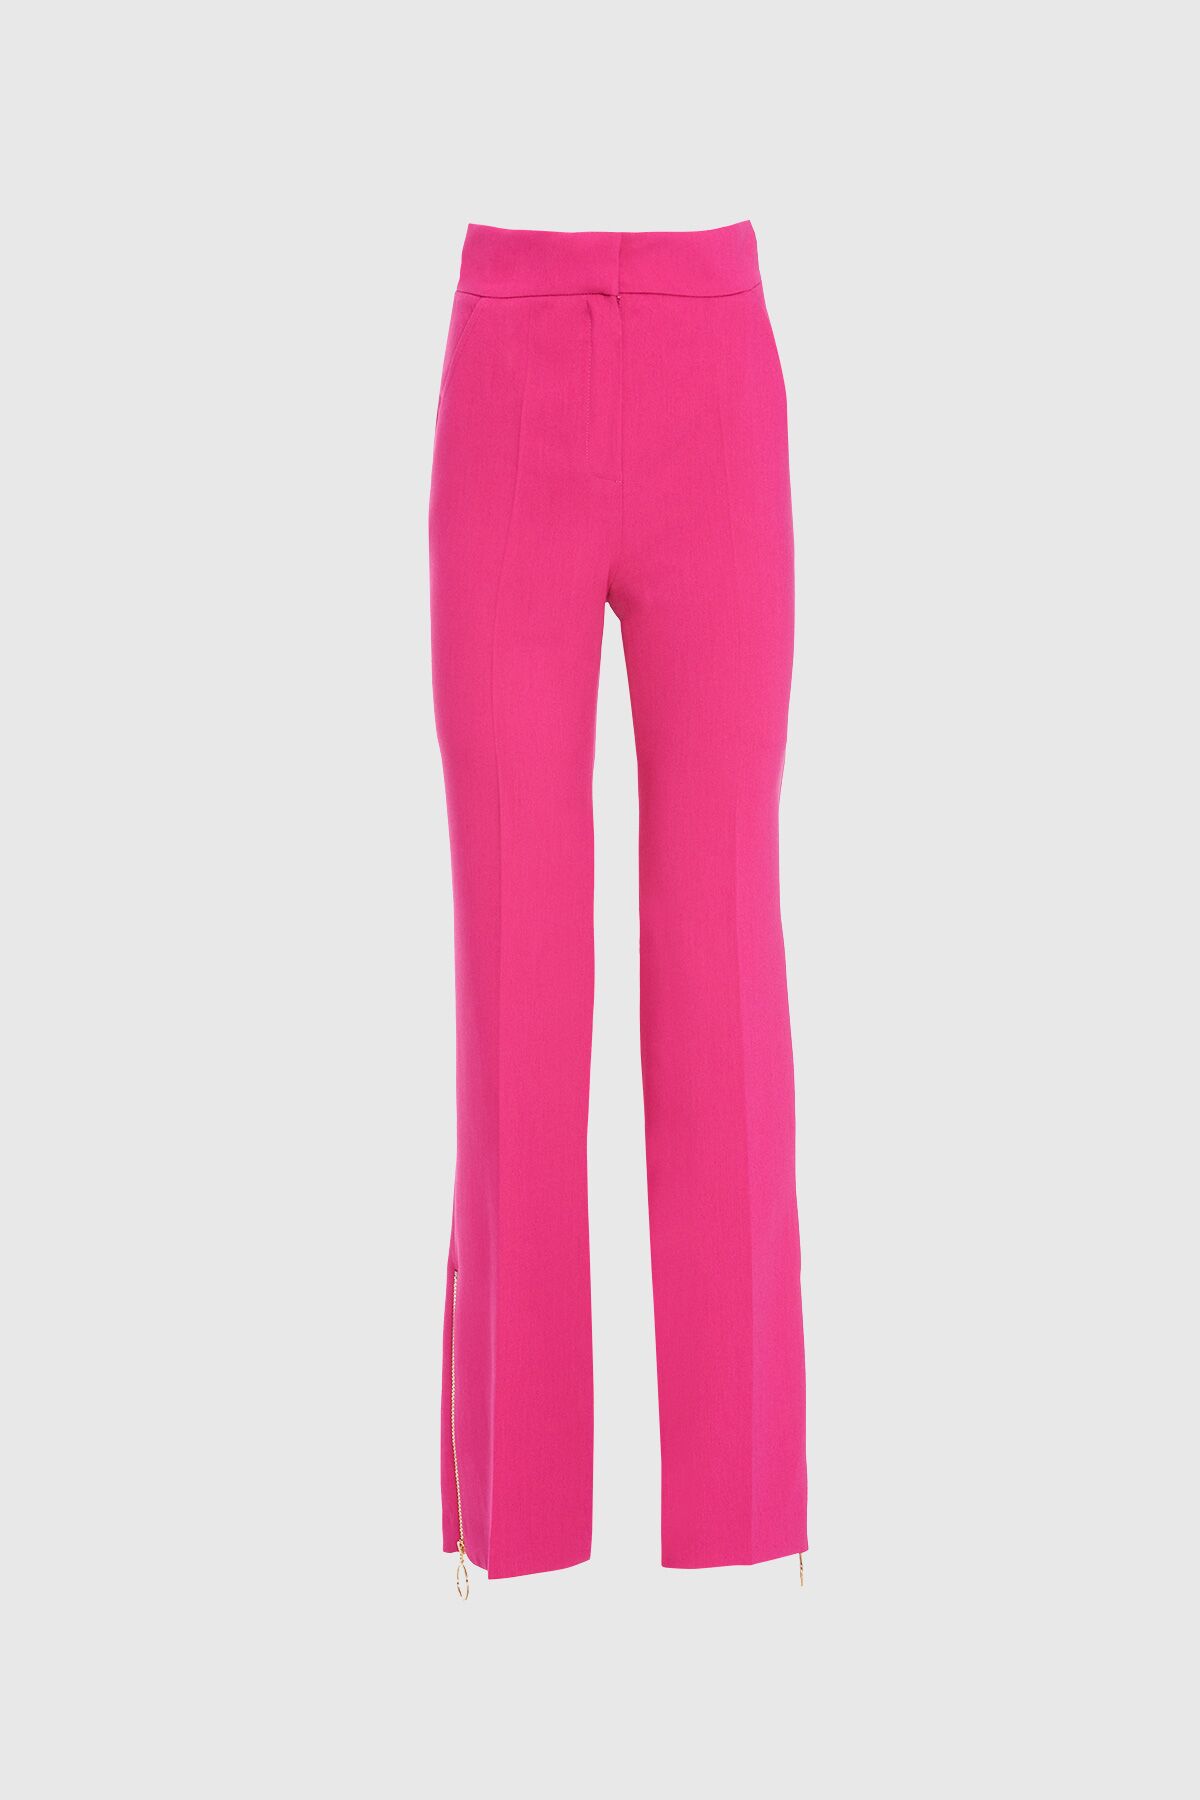  GIZIA - High Waist Pink Pants With Leg Zipper Detail